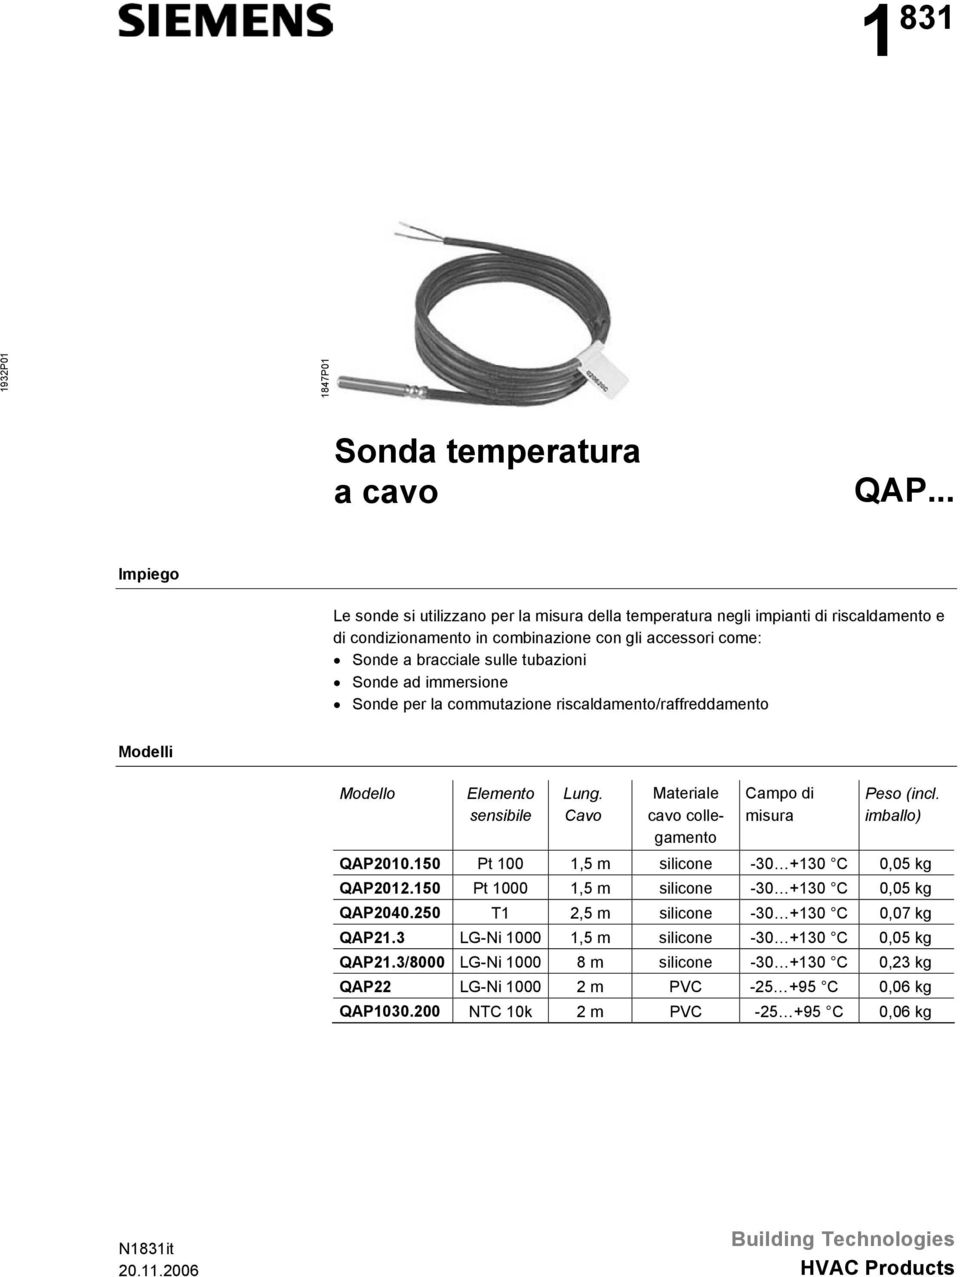 ad immersione Sonde per la commutazione riscaldamento/raffreddamento Modelli Modello Elemento sensibile Lung. Cavo Materiale cavo collegamento Campo di misura Peso (incl. imballo) QAP2010.